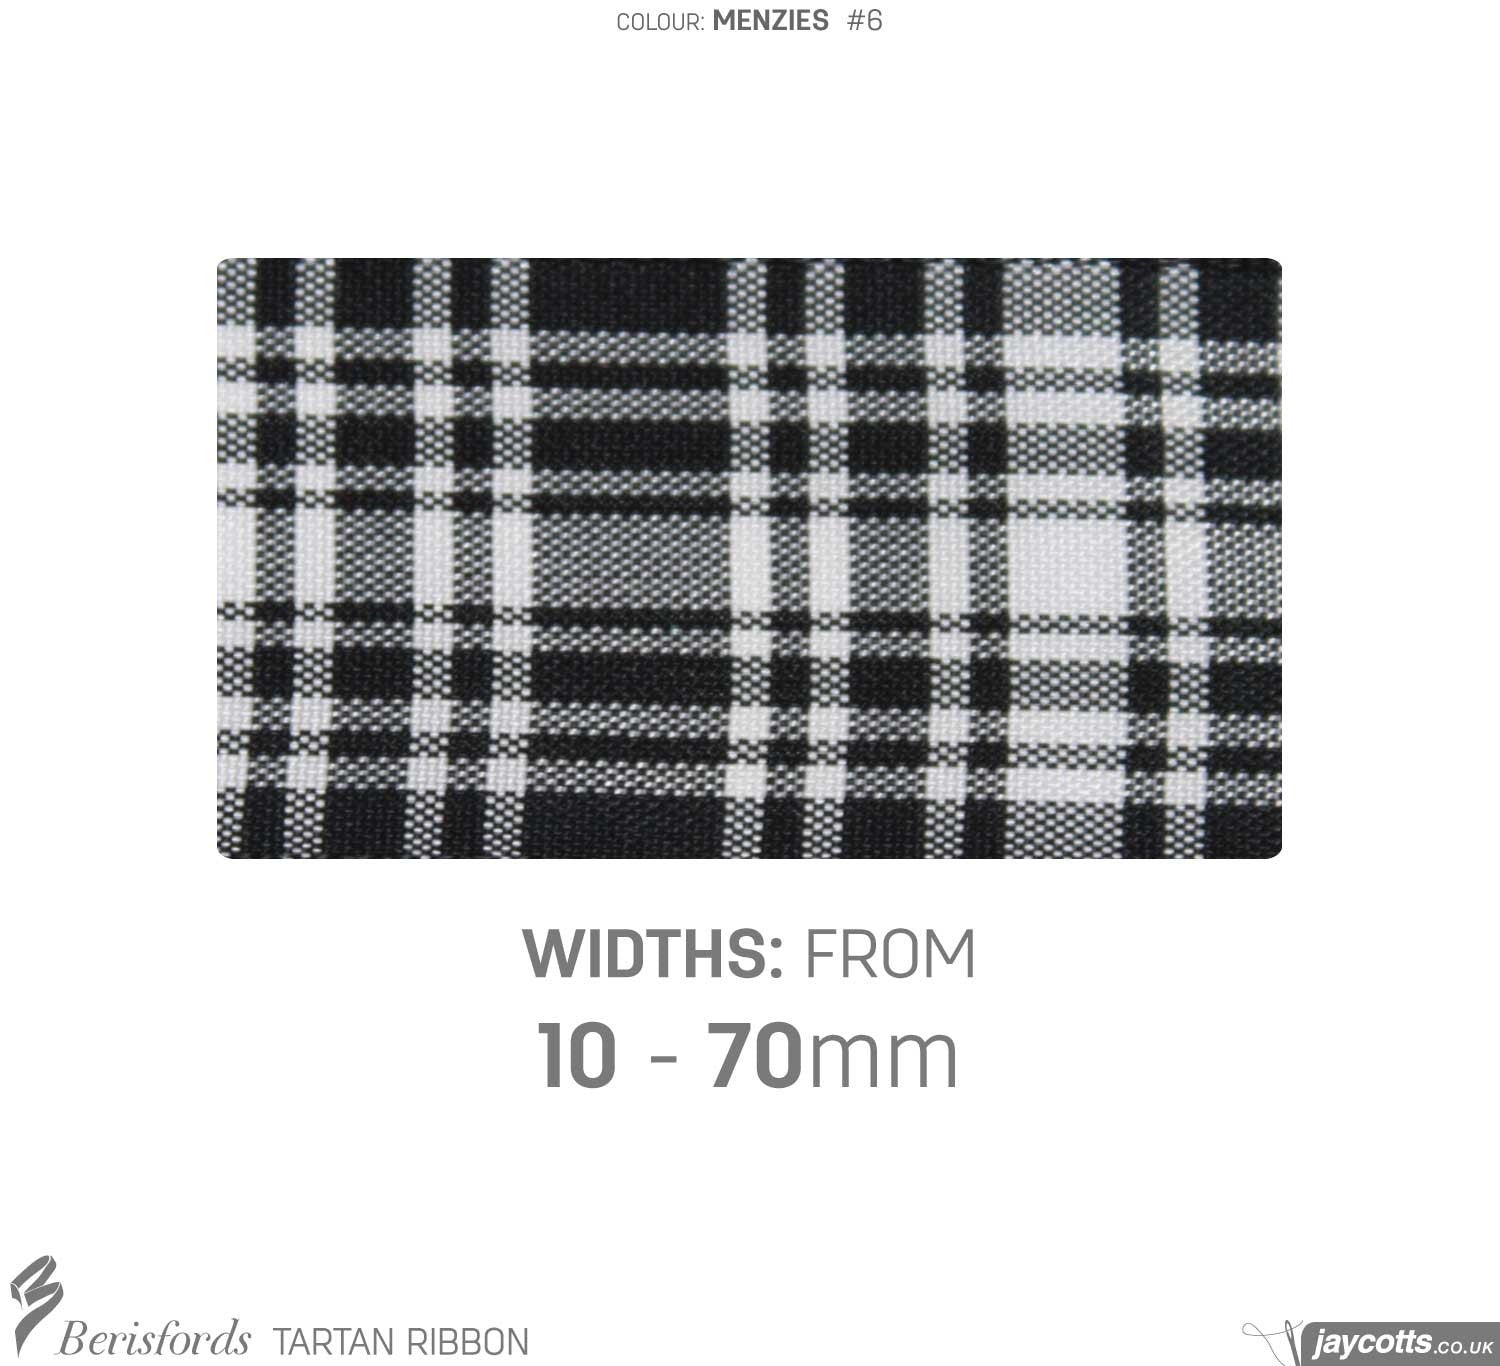 Berisfords Tartan Ribbon: #6 Menzies from Jaycotts Sewing Supplies